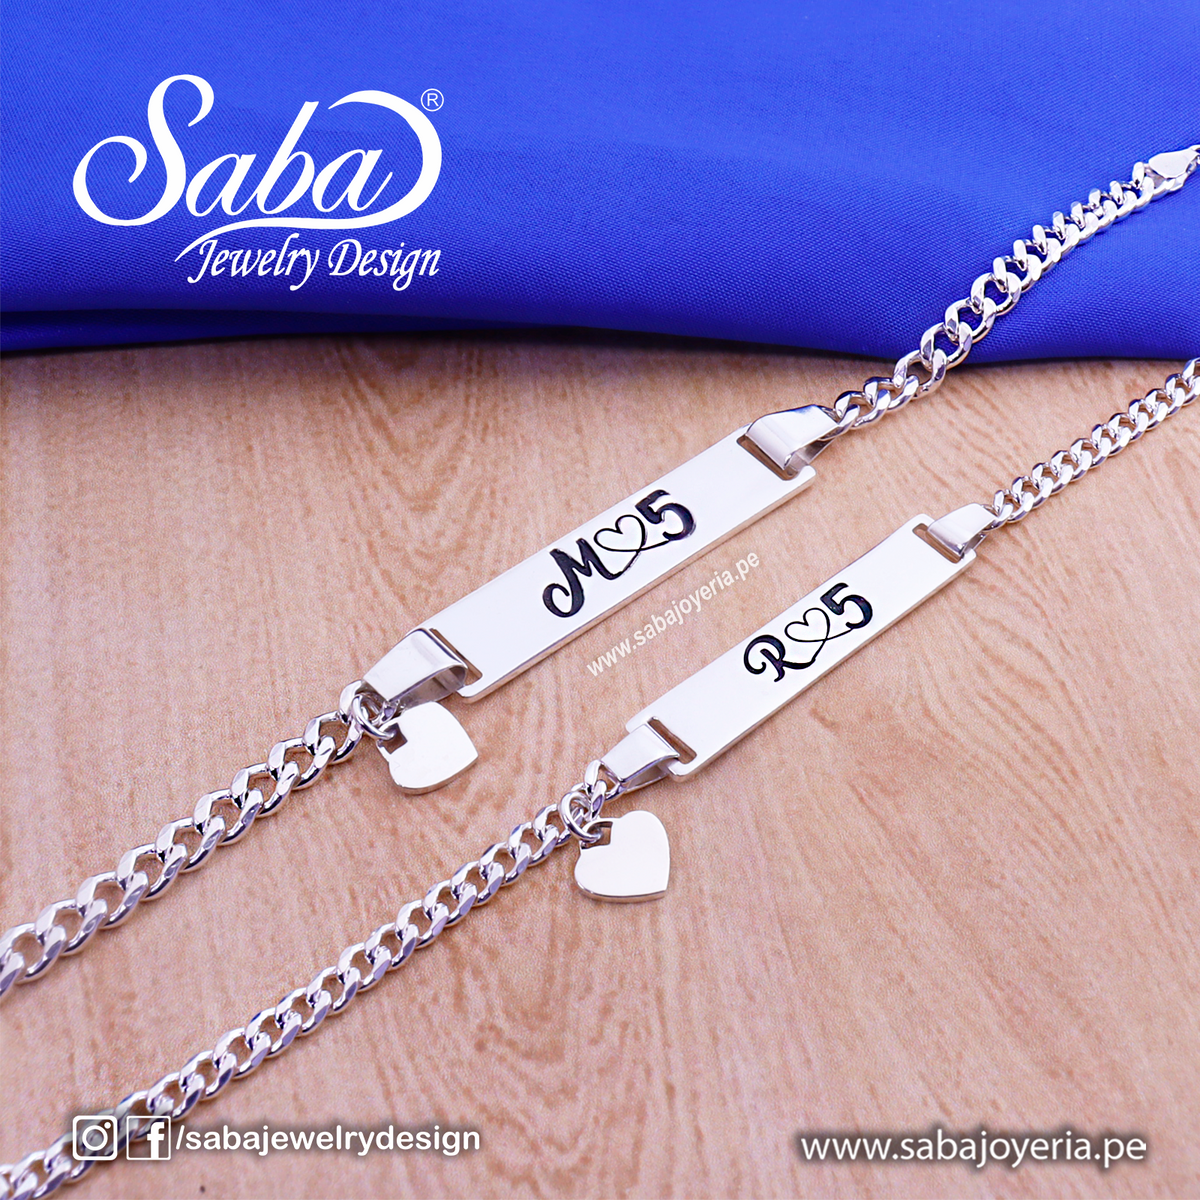 – Saba Jewelry Design